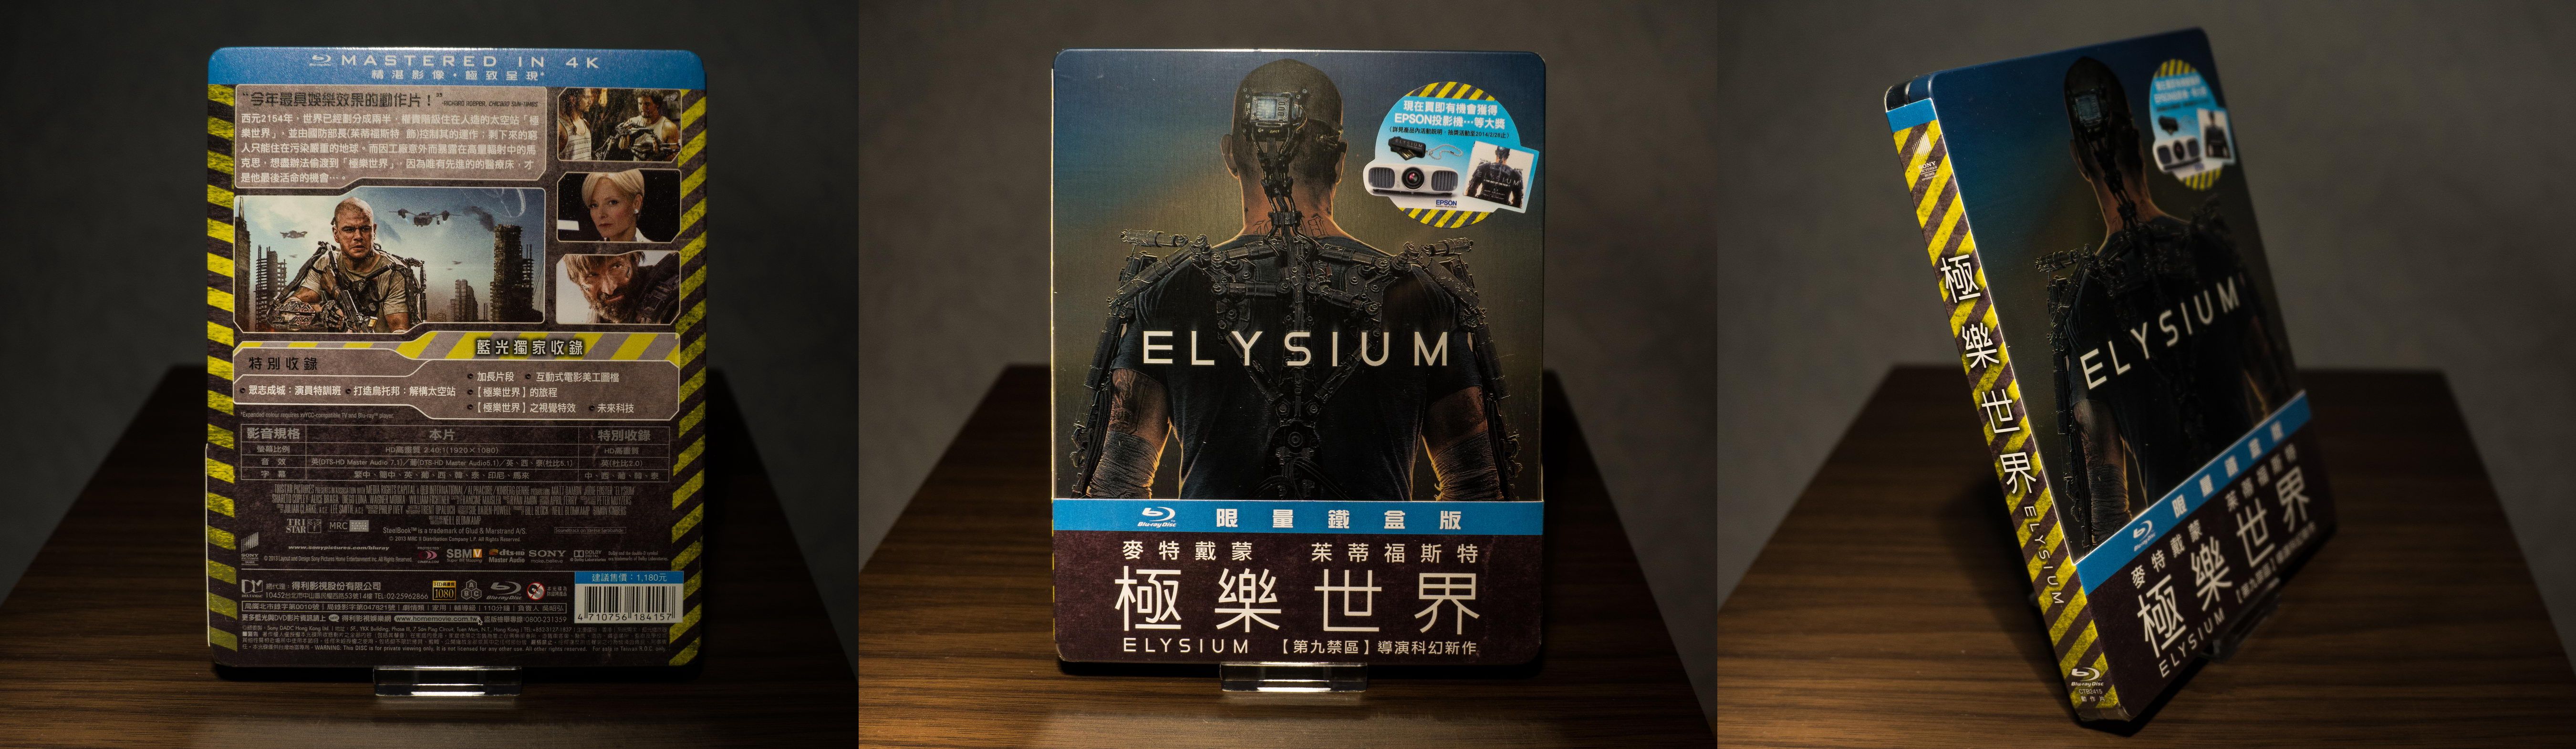 Elysium Taiwan